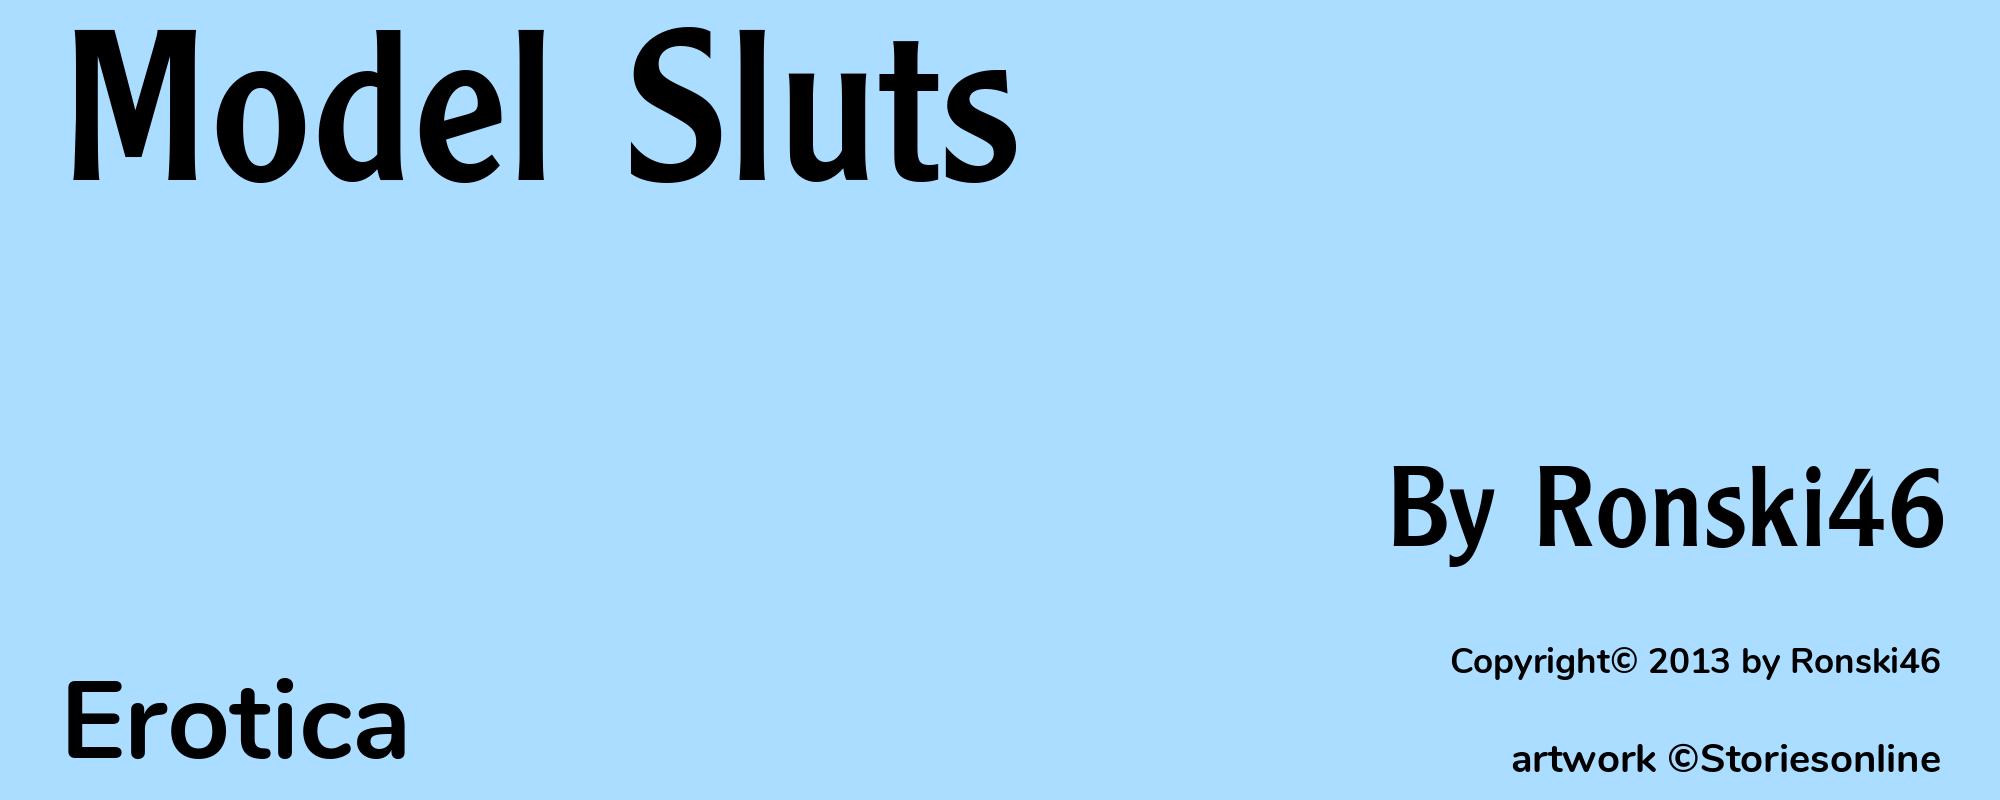 Model Sluts - Cover